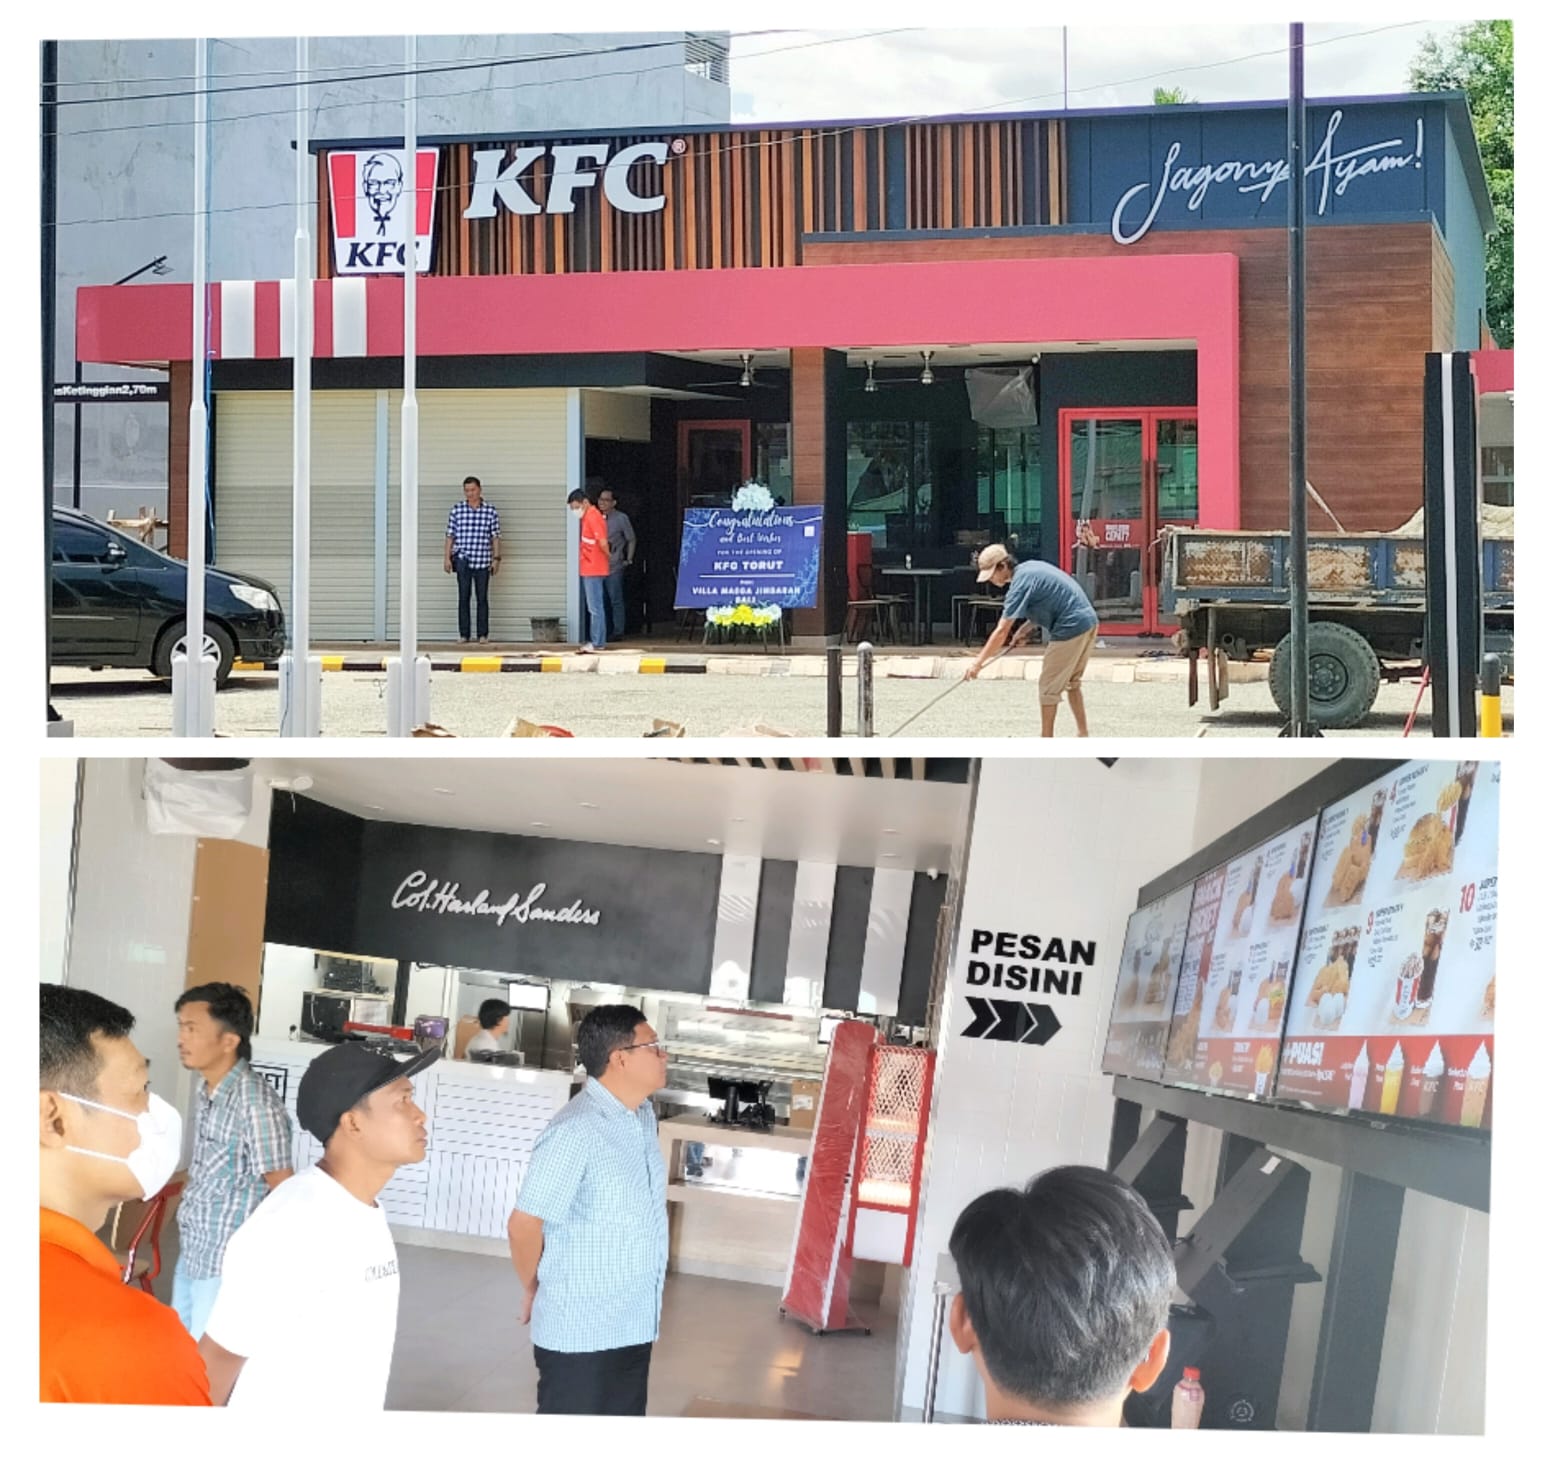 KFC Hadir di Torut, Menambah Pilihan Kuliner Bagi Masyarakat